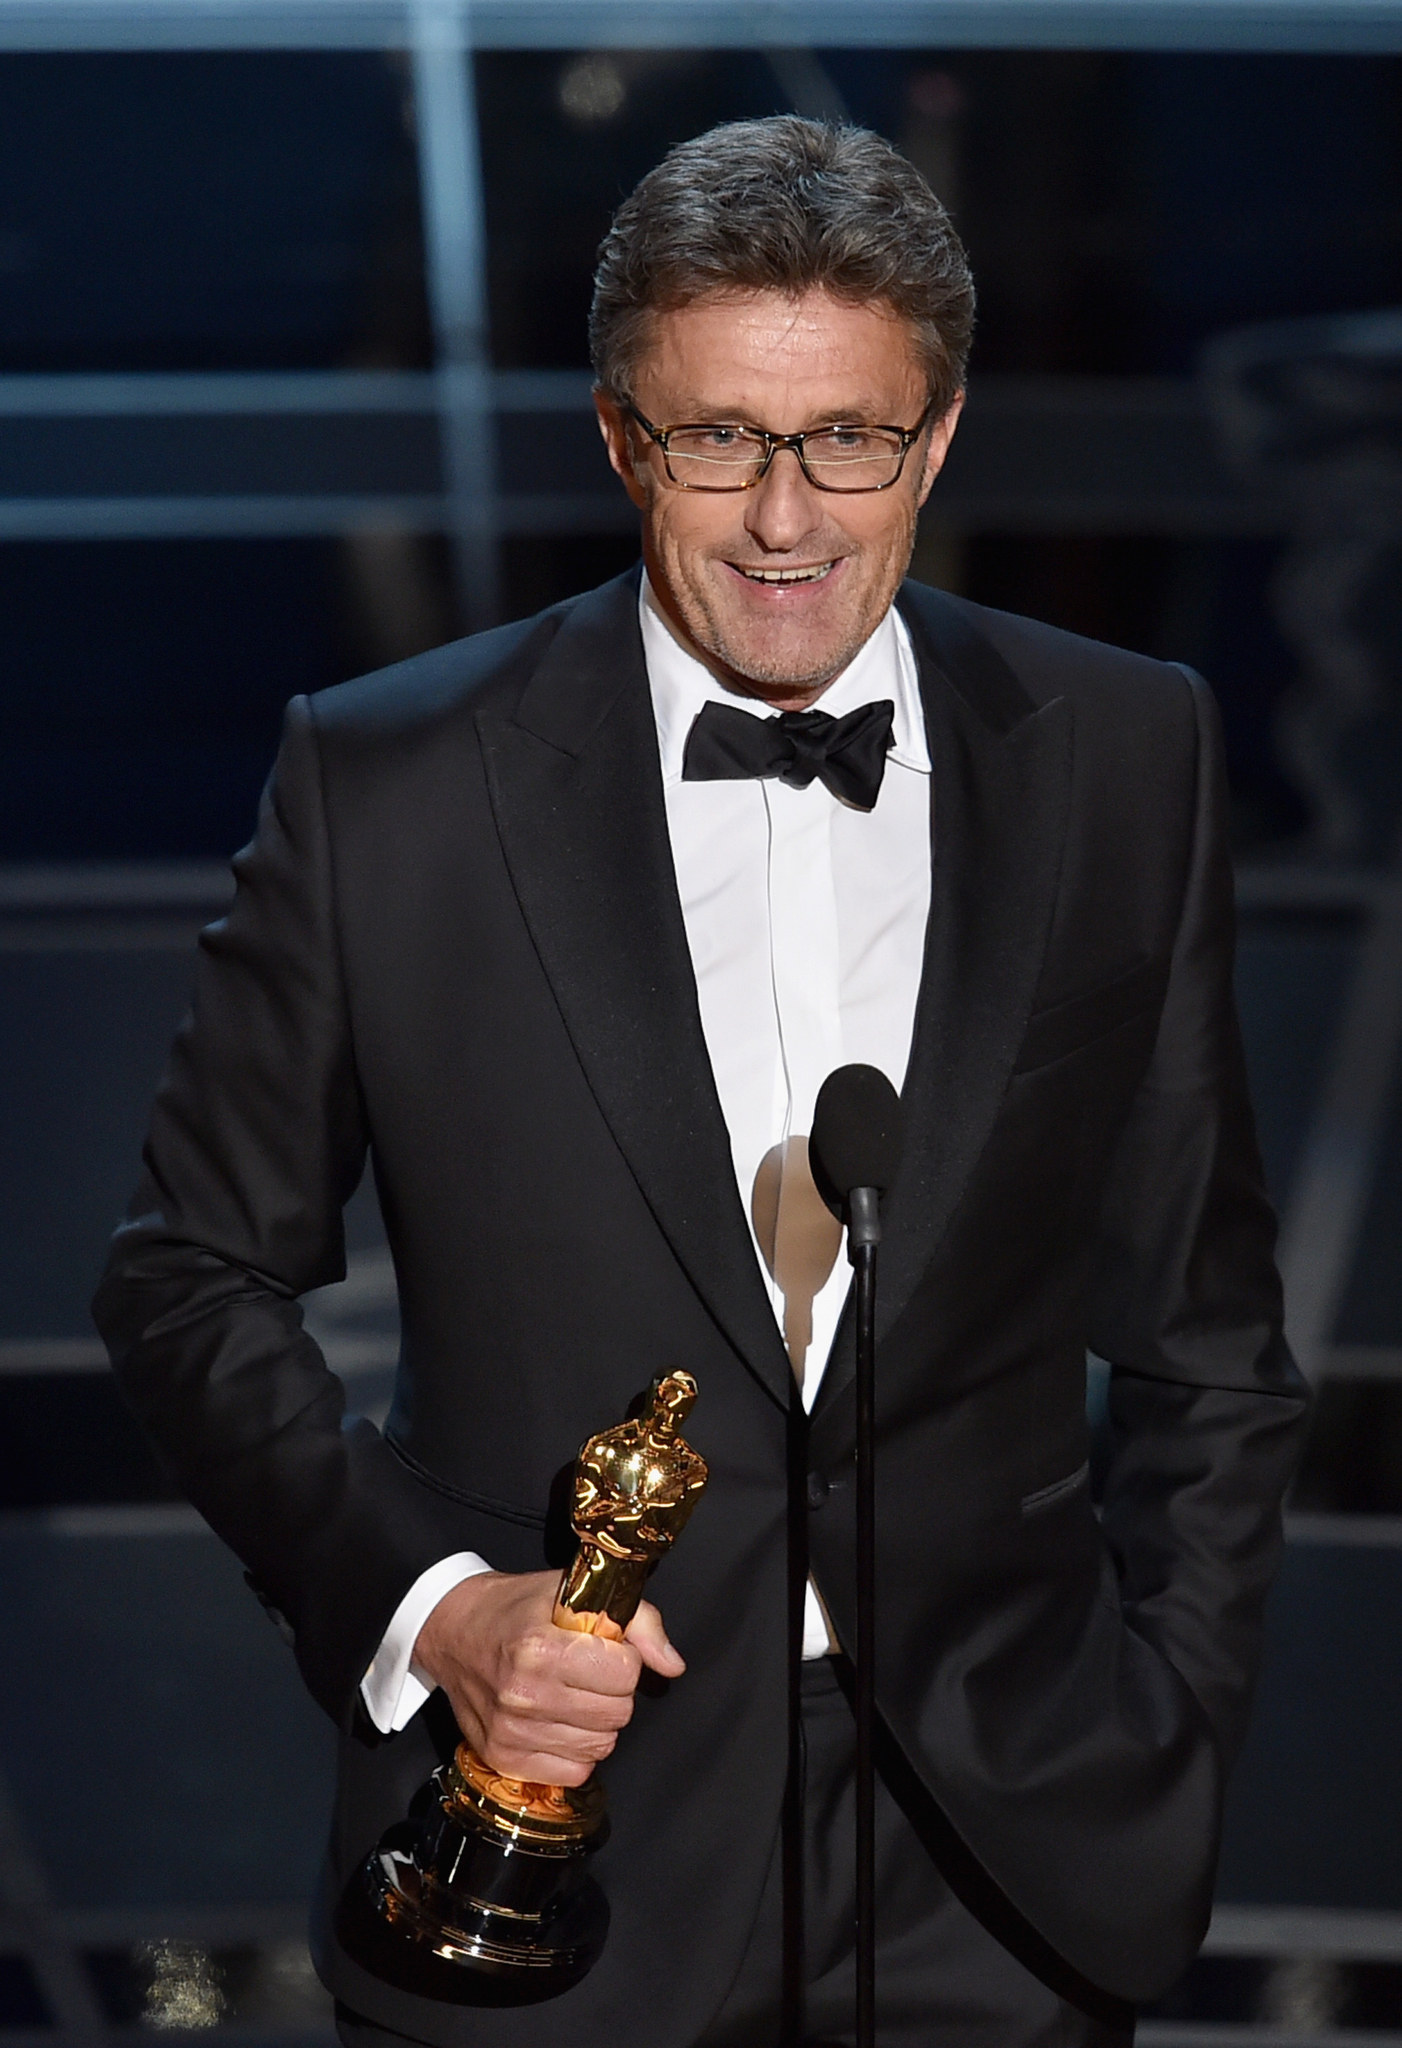 Pawel Pawlikowski at event of The Oscars (2015)